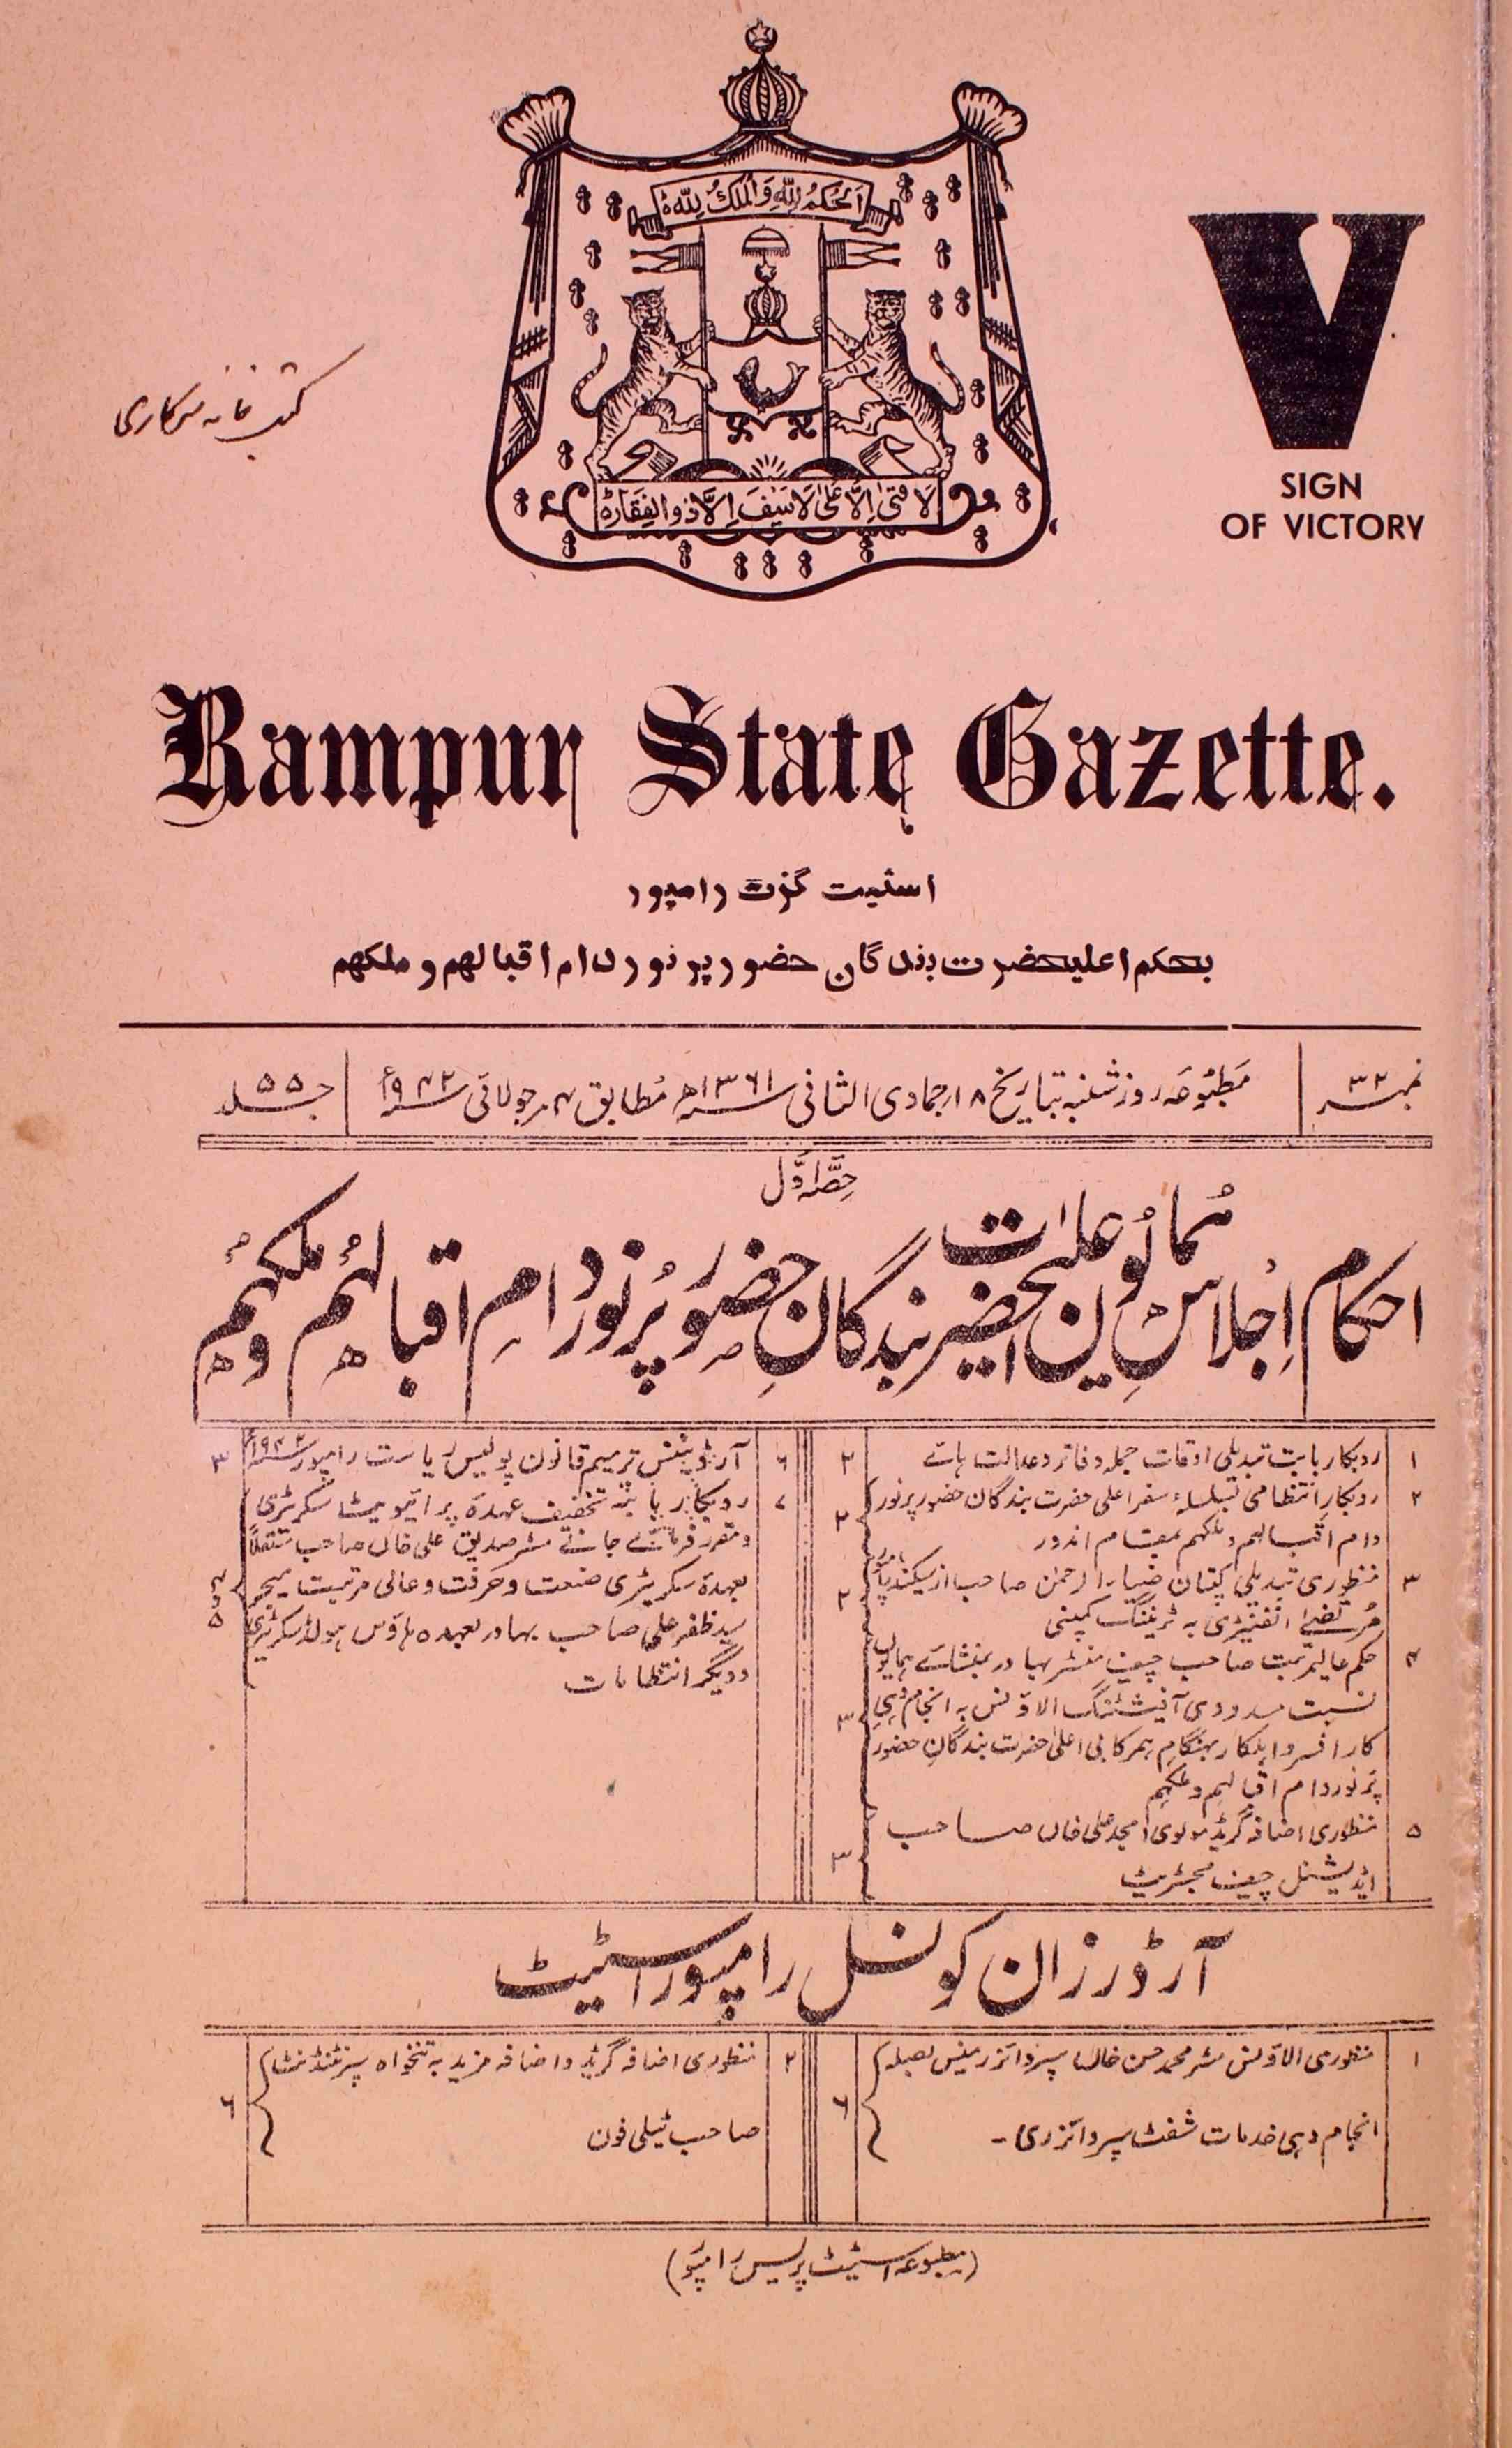 Rampur State Gazette-55 Number-32,1-Shumara Number-032